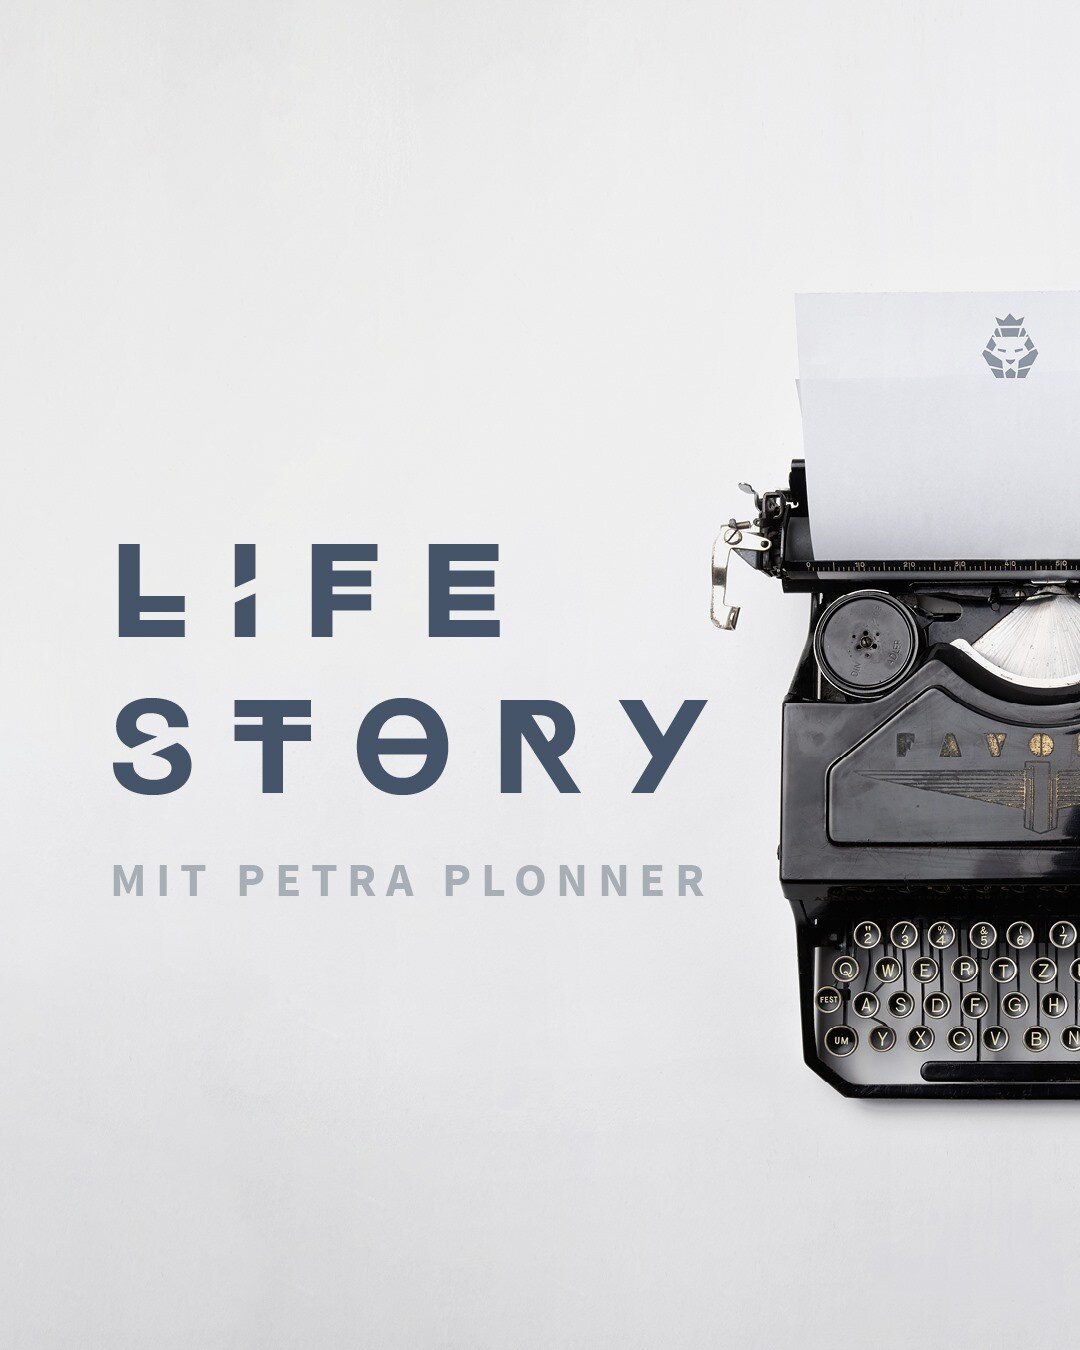 Du wei&szlig;t oft gar nicht, was du mit deinem Leben machen sollst und das Wort &quot;Bestimmung&quot; kommt dir so riesig vor? Check dir unsere LIFE Story mit Petra Plonner zum Thema &quot;Bestimmung entdecken&quot; auf Youtube! Link in Bio!